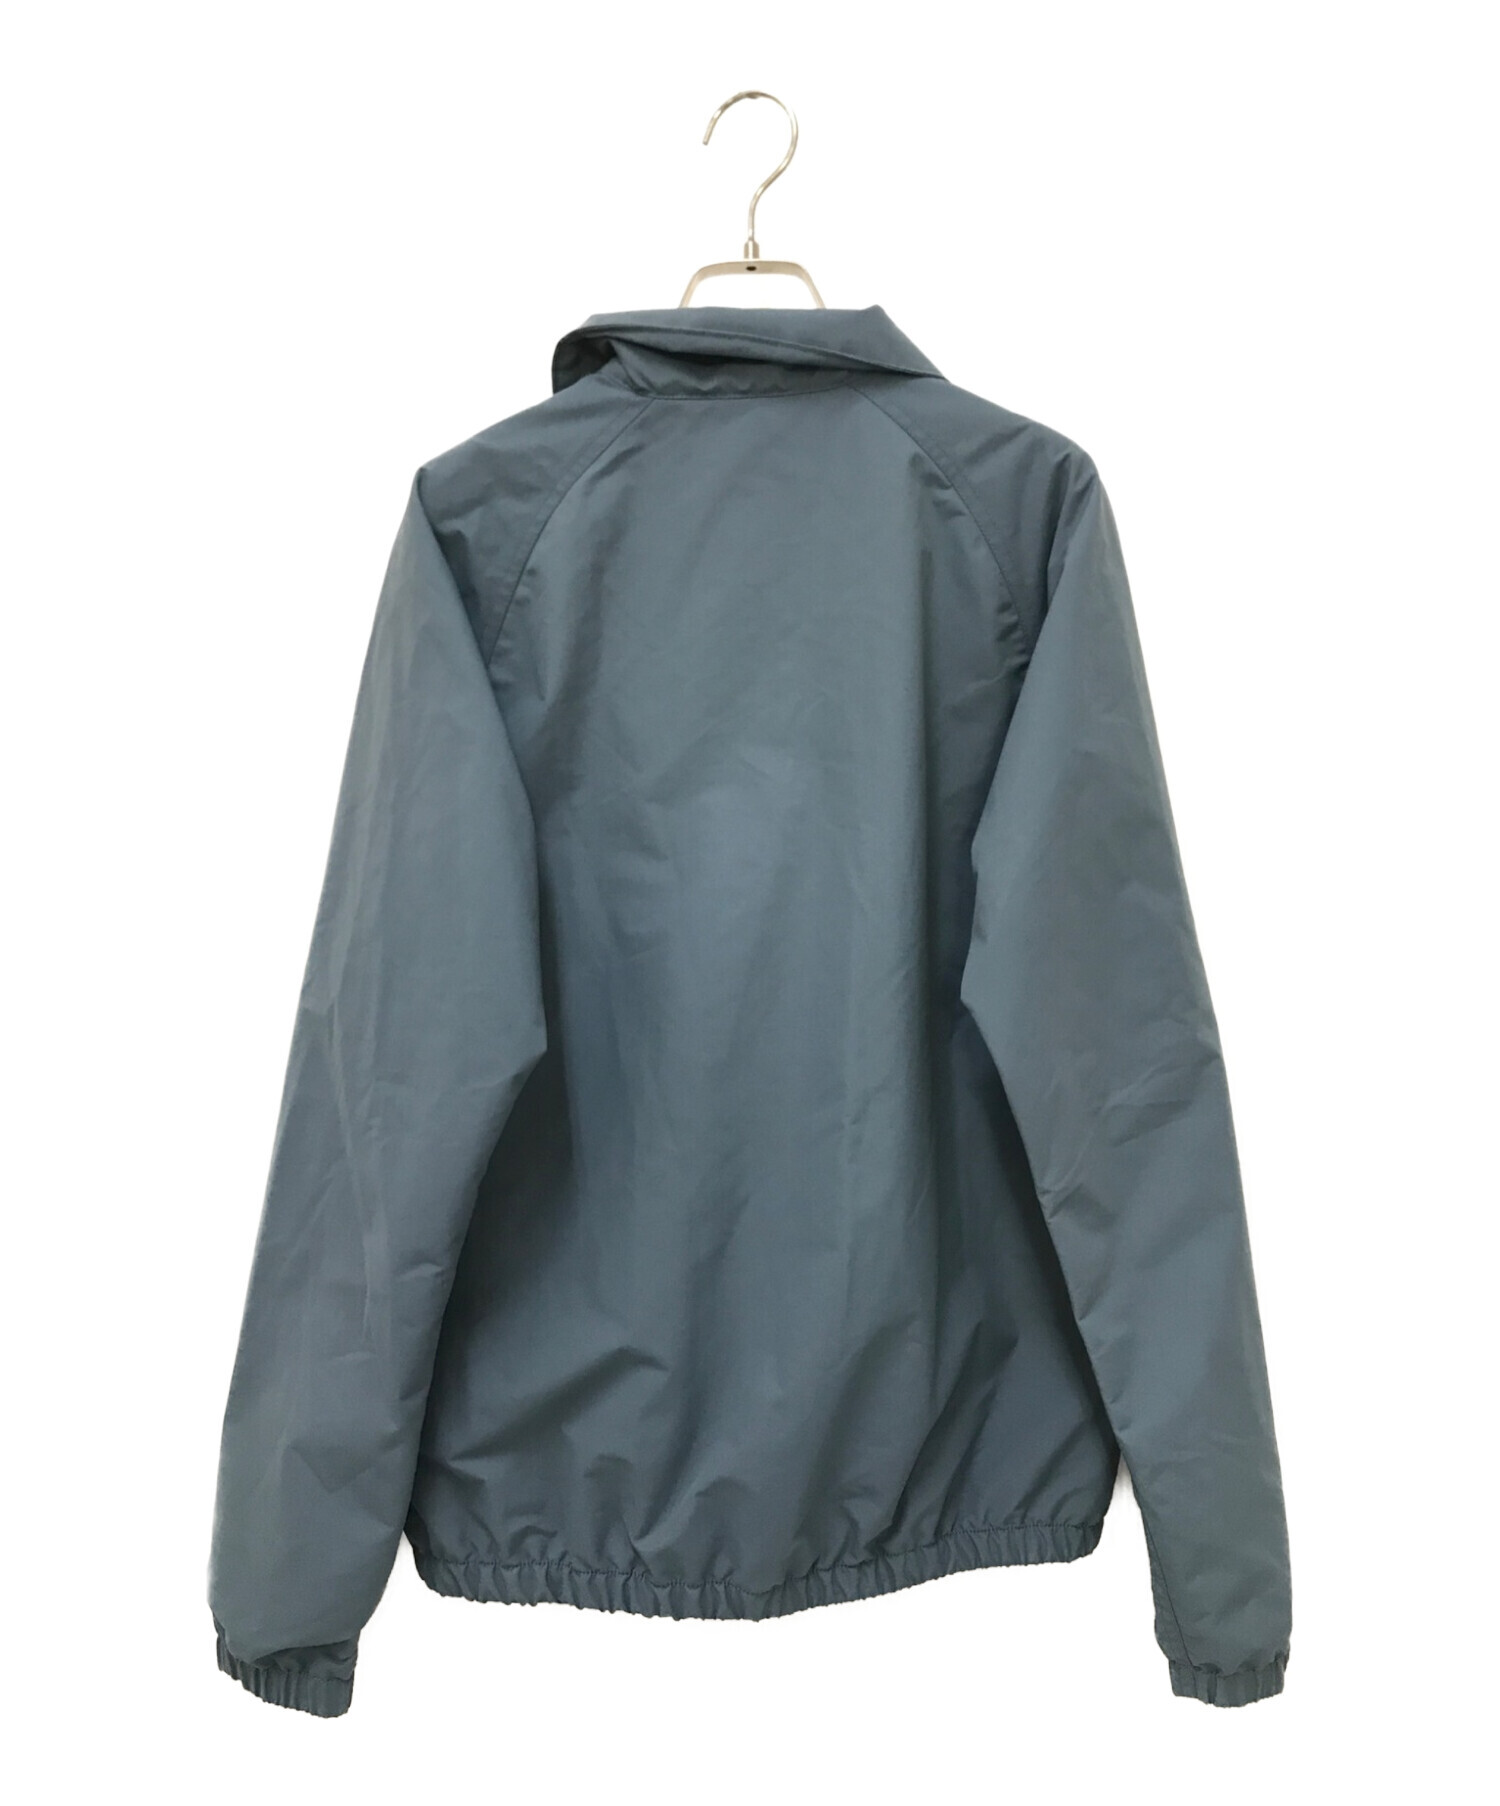 Patagonia (パタゴニア) バギーズジャケット グレー サイズ:XS